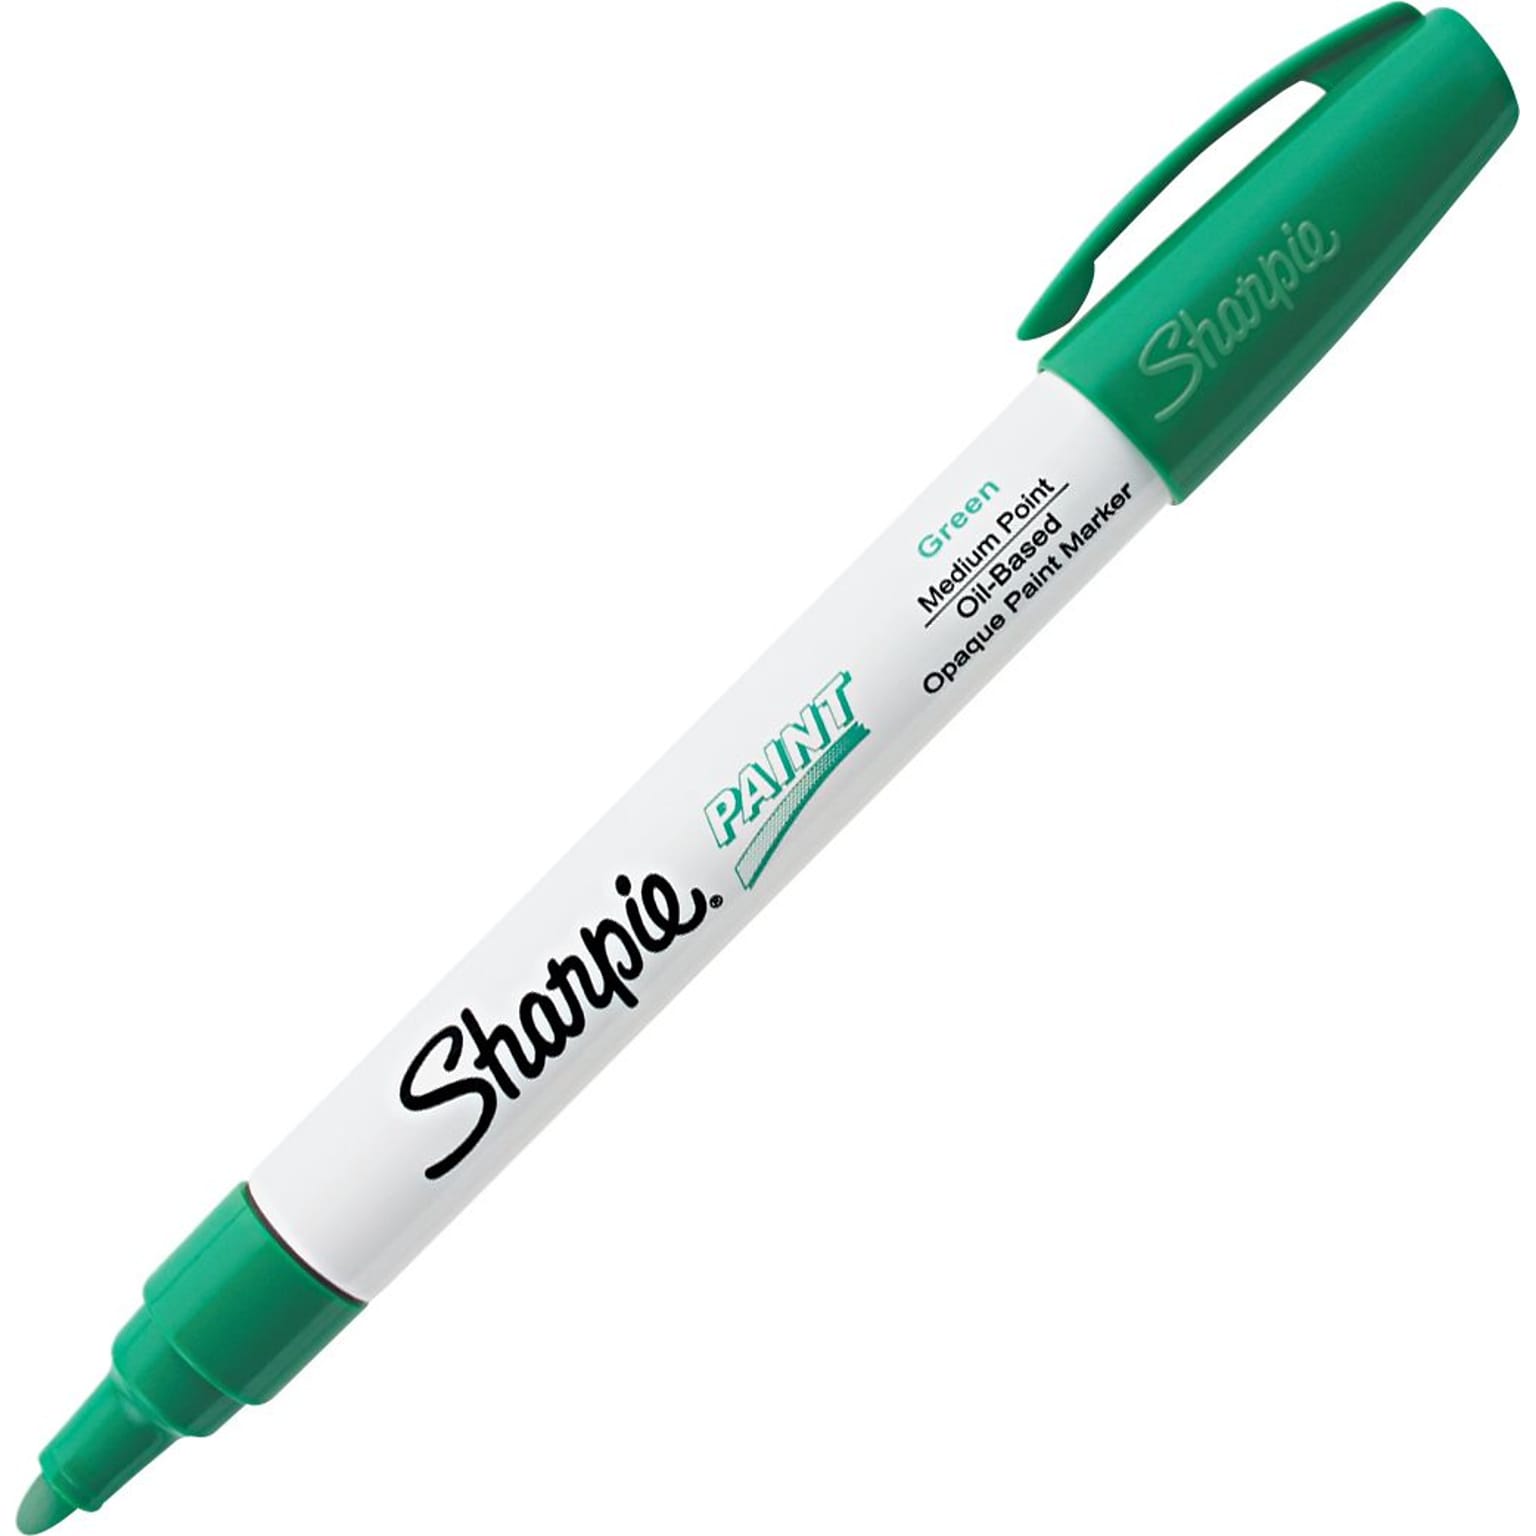 Sharpie Oil-Based Paint Marker, Medium Tip, Green (35552)